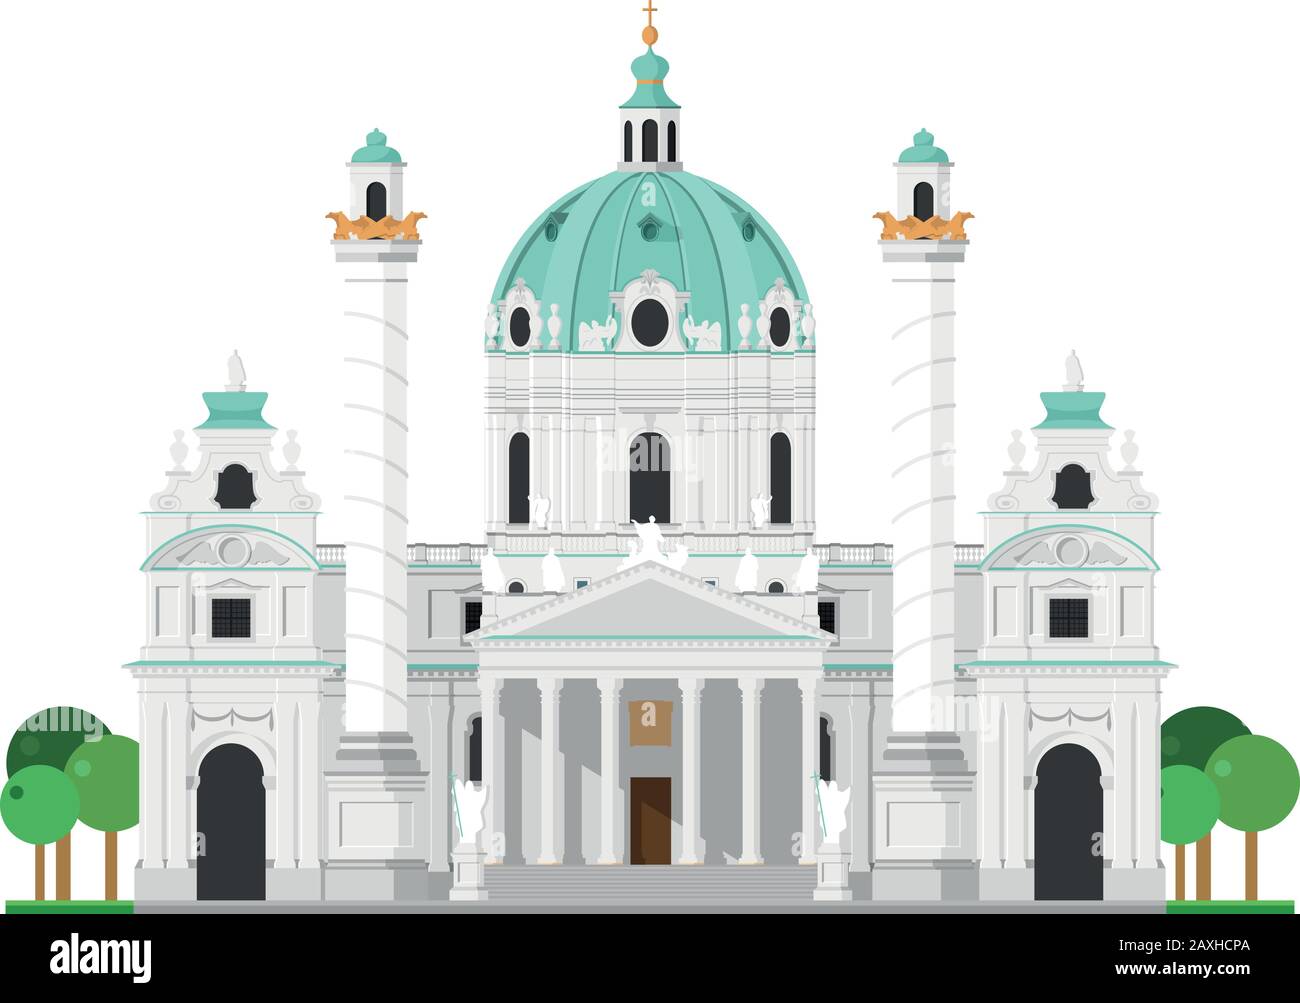 Chiesa Di San Carlo (Vienna, Austria). Isolato su sfondo bianco illustrazione vettoriale. Illustrazione Vettoriale